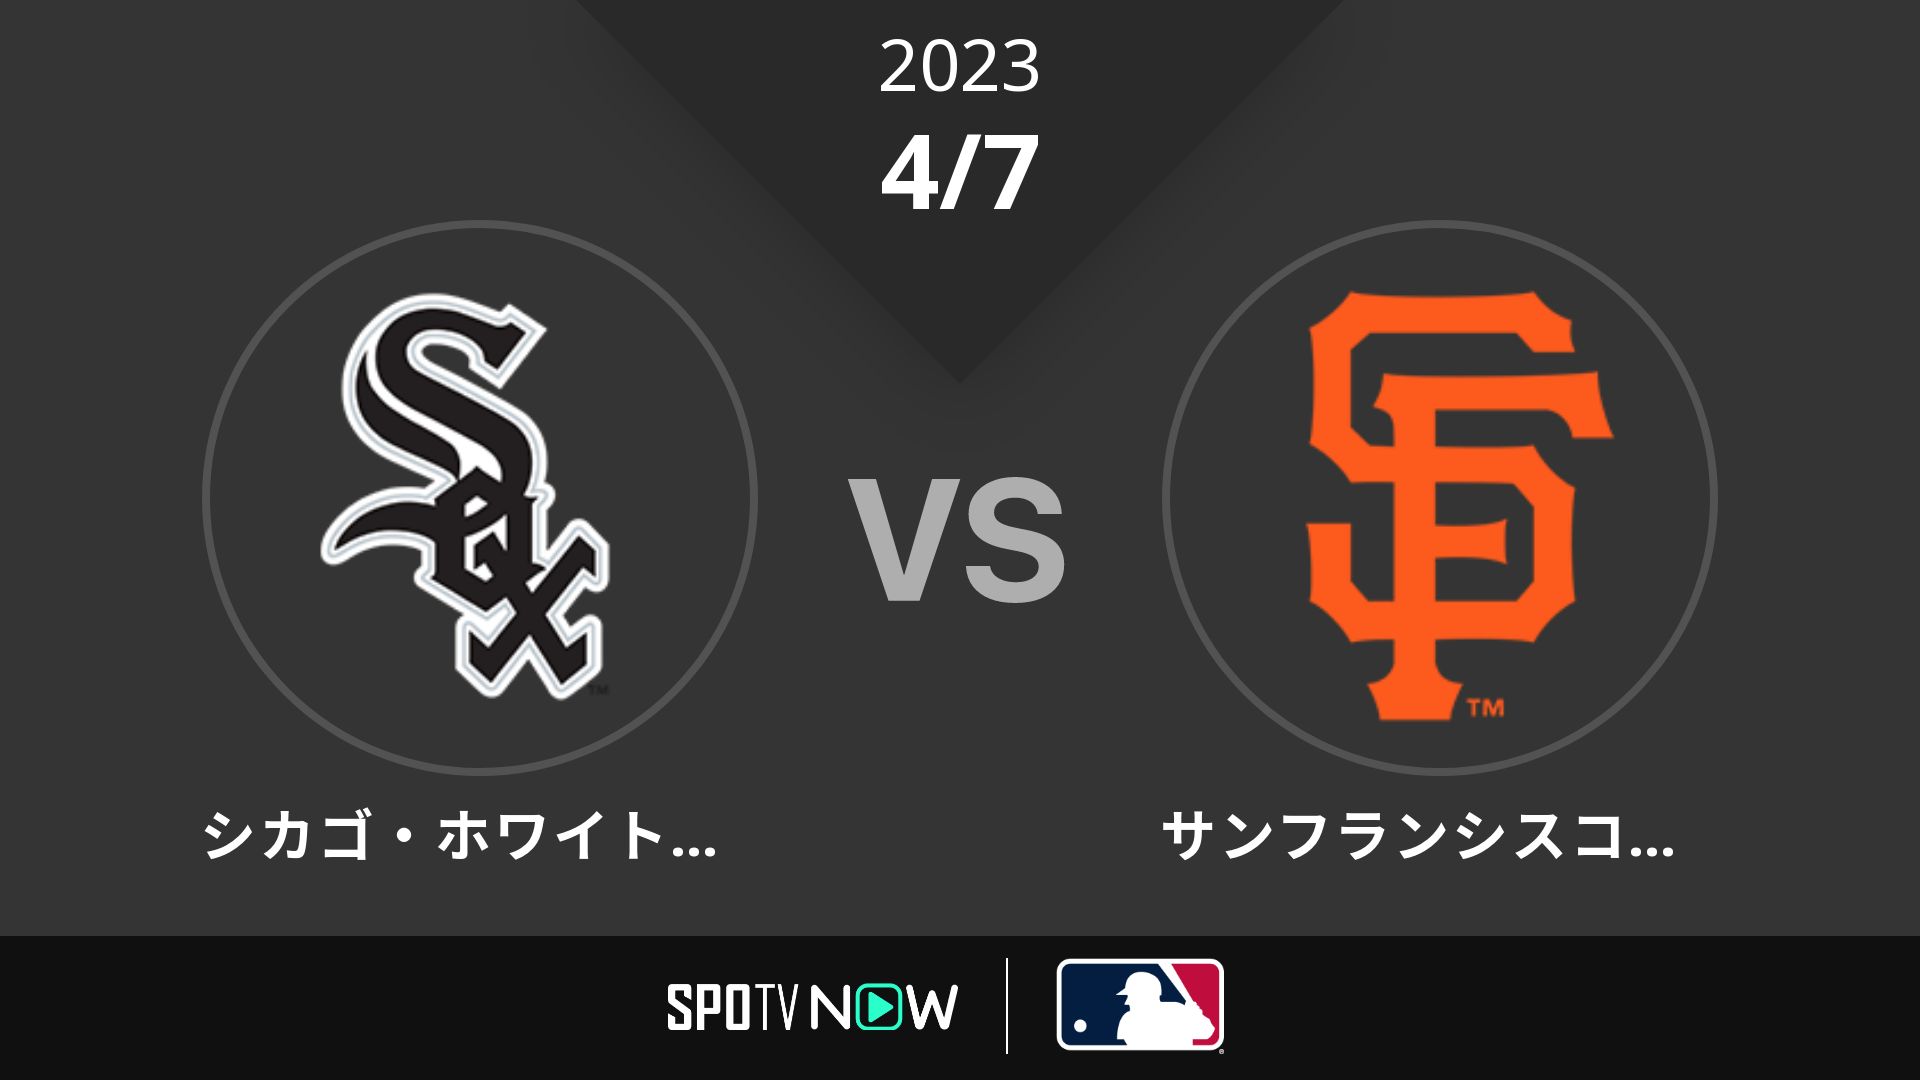 2023/4/7 Wソックス vs ジャイアンツ [MLB]